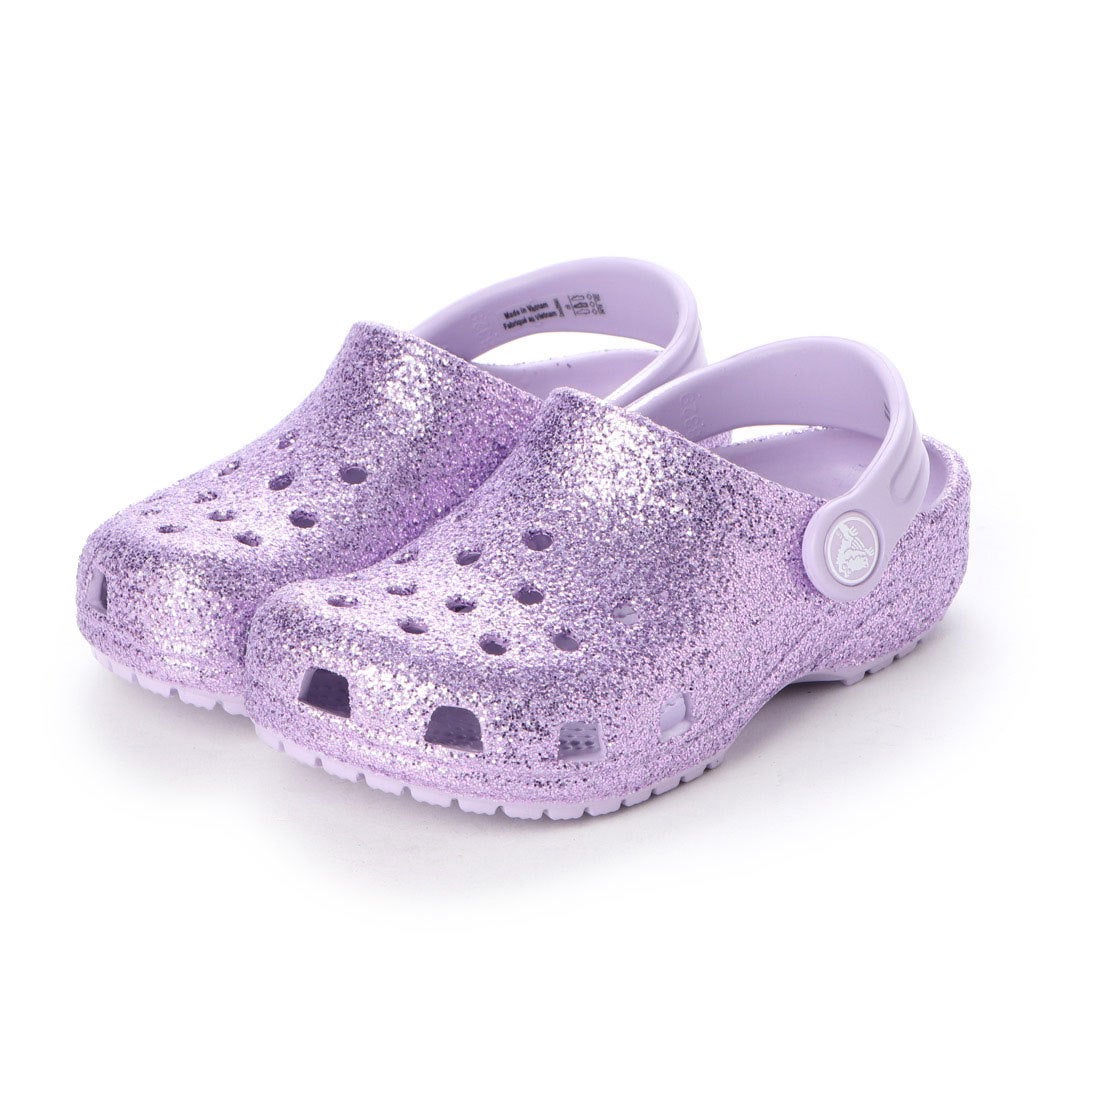 クロックス Crocs クロッグサンダル Classic Glitter Clog K Lavender 5441 530 靴 ファッション通販 ロコンド 自宅で試着 気軽に返品